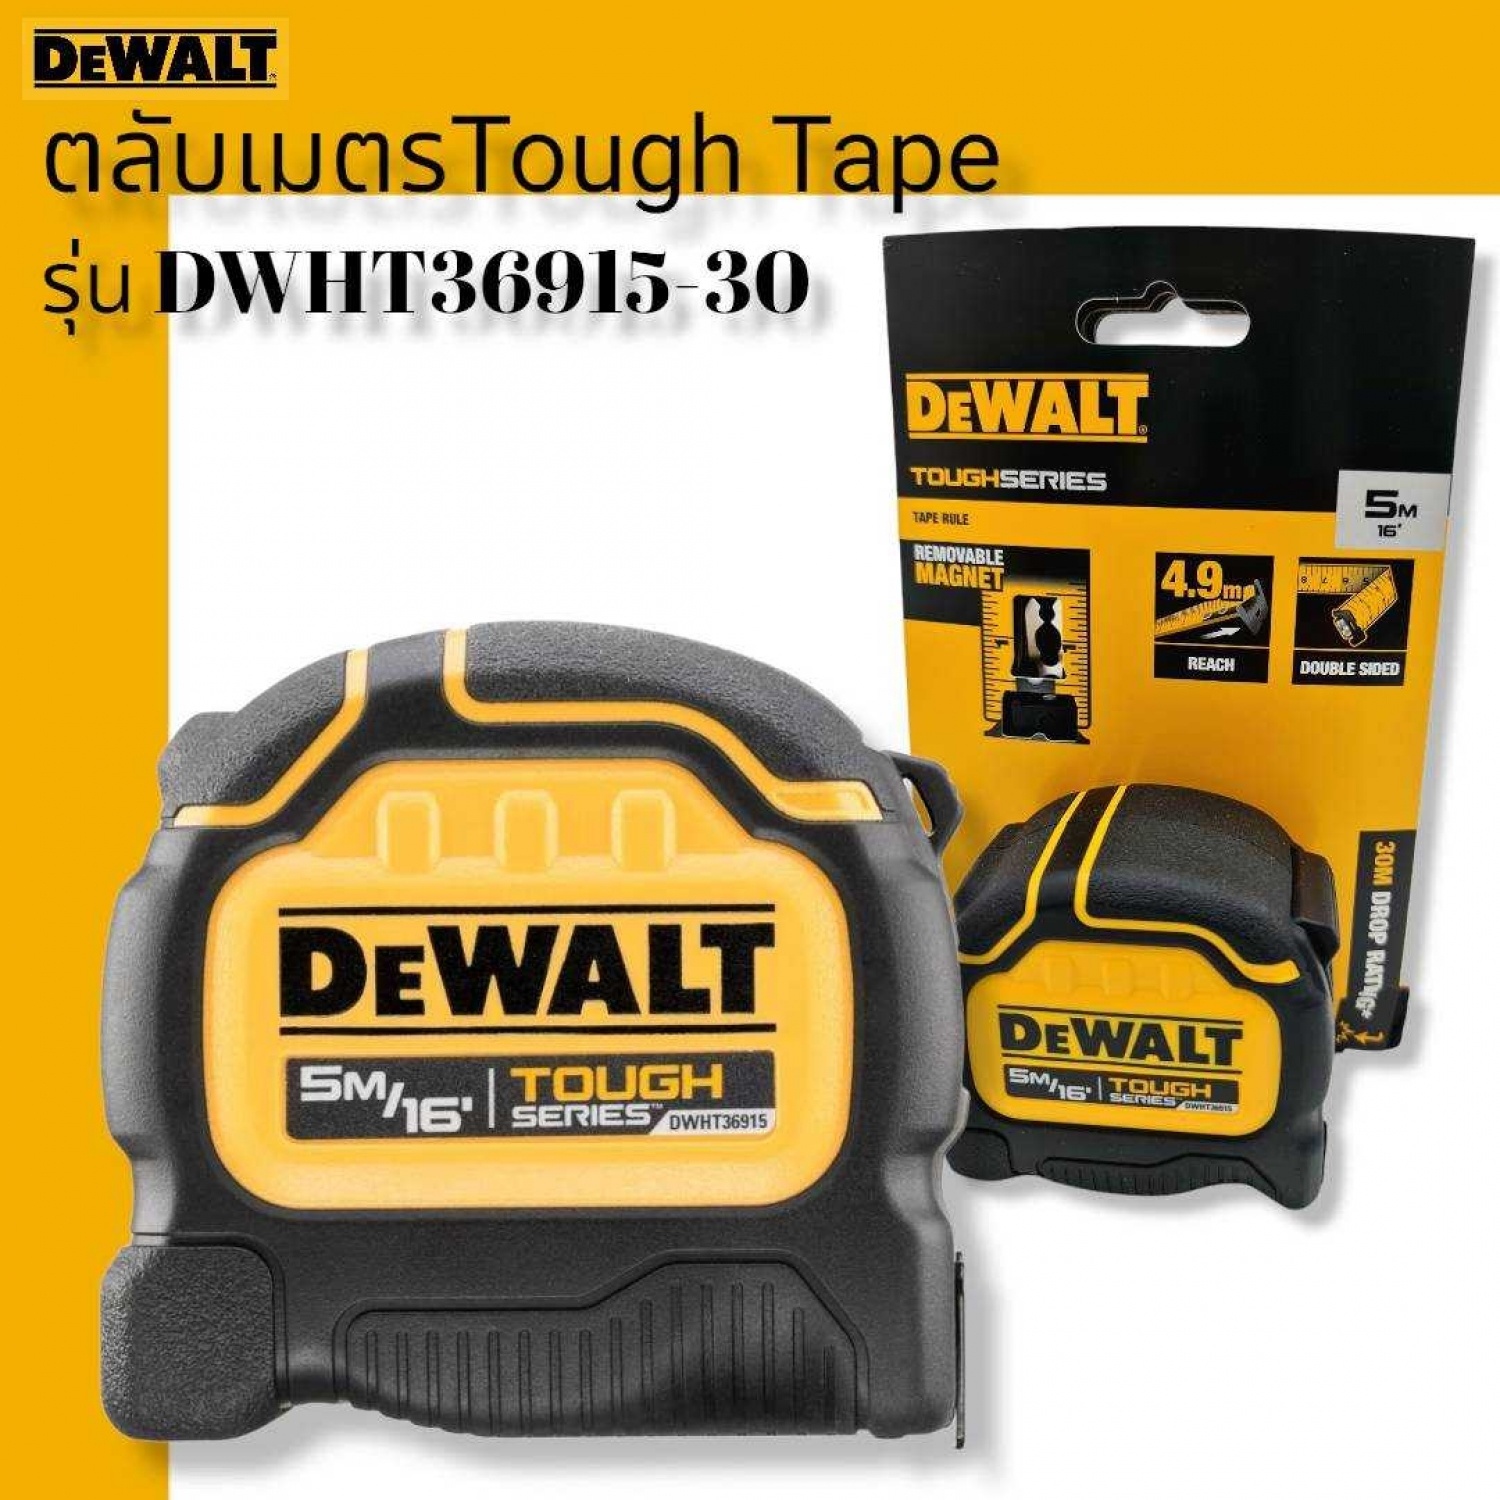 DEWALT ตลับเมตร 5M DWHT36915-30 Tough Tape